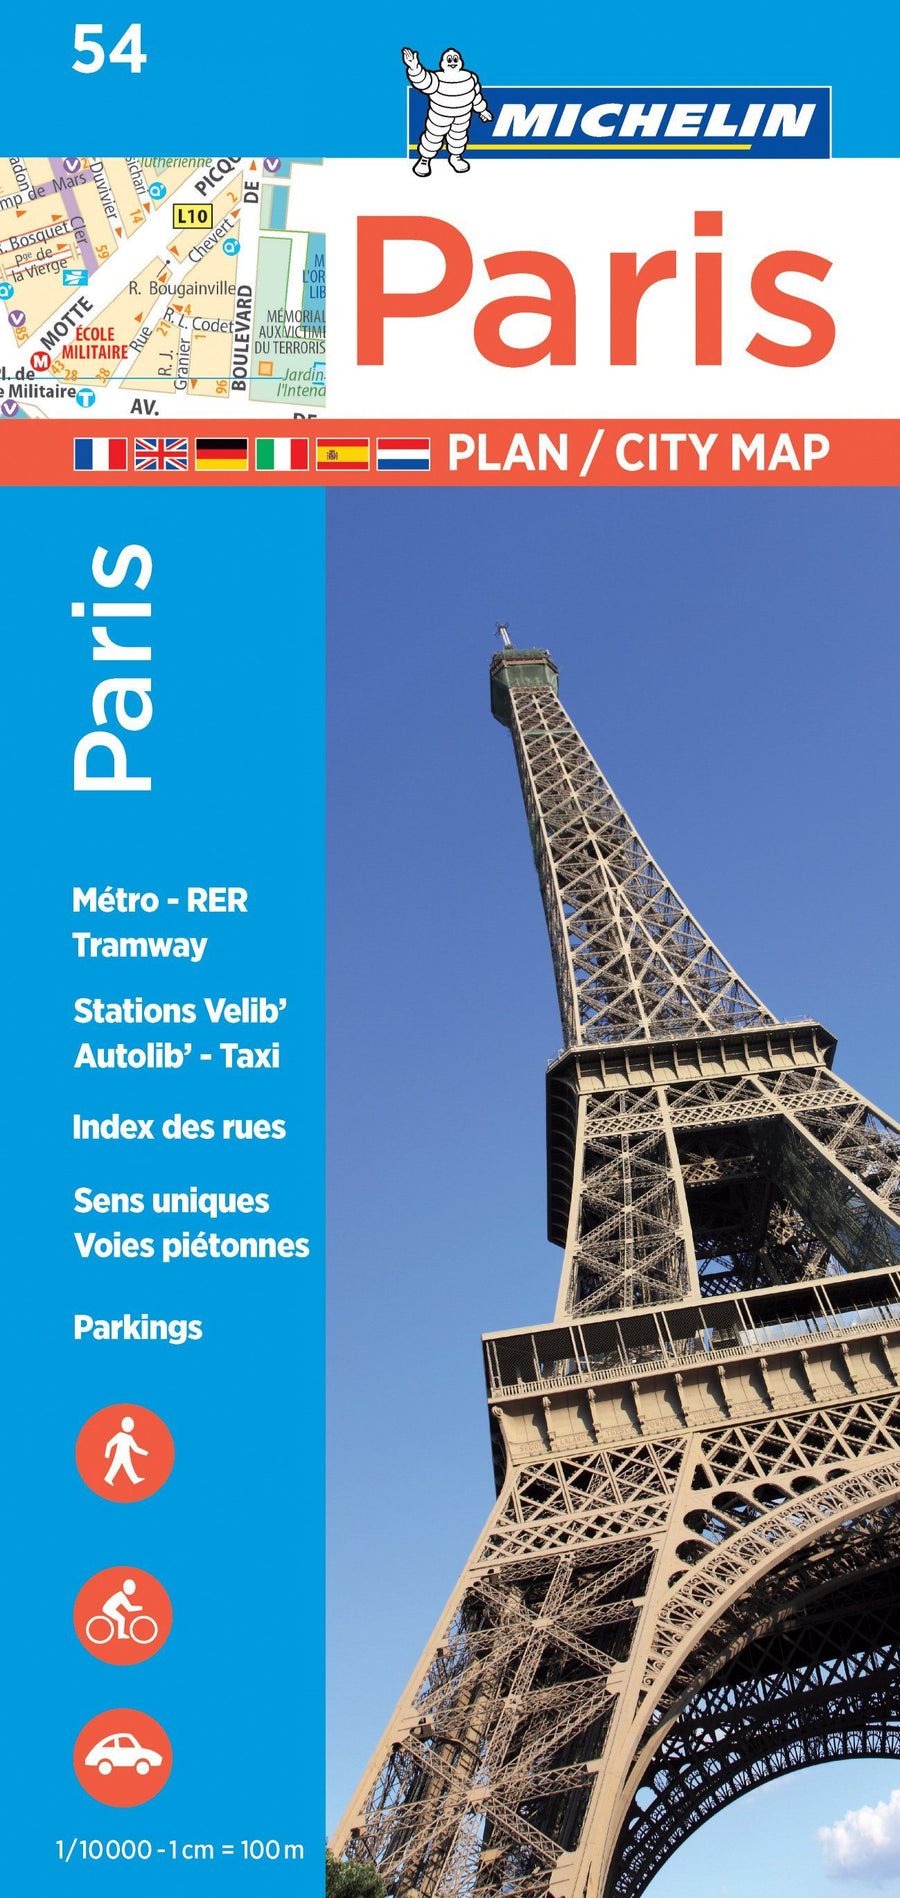 Plan de ville - Paris | Michelin carte pliée Michelin 